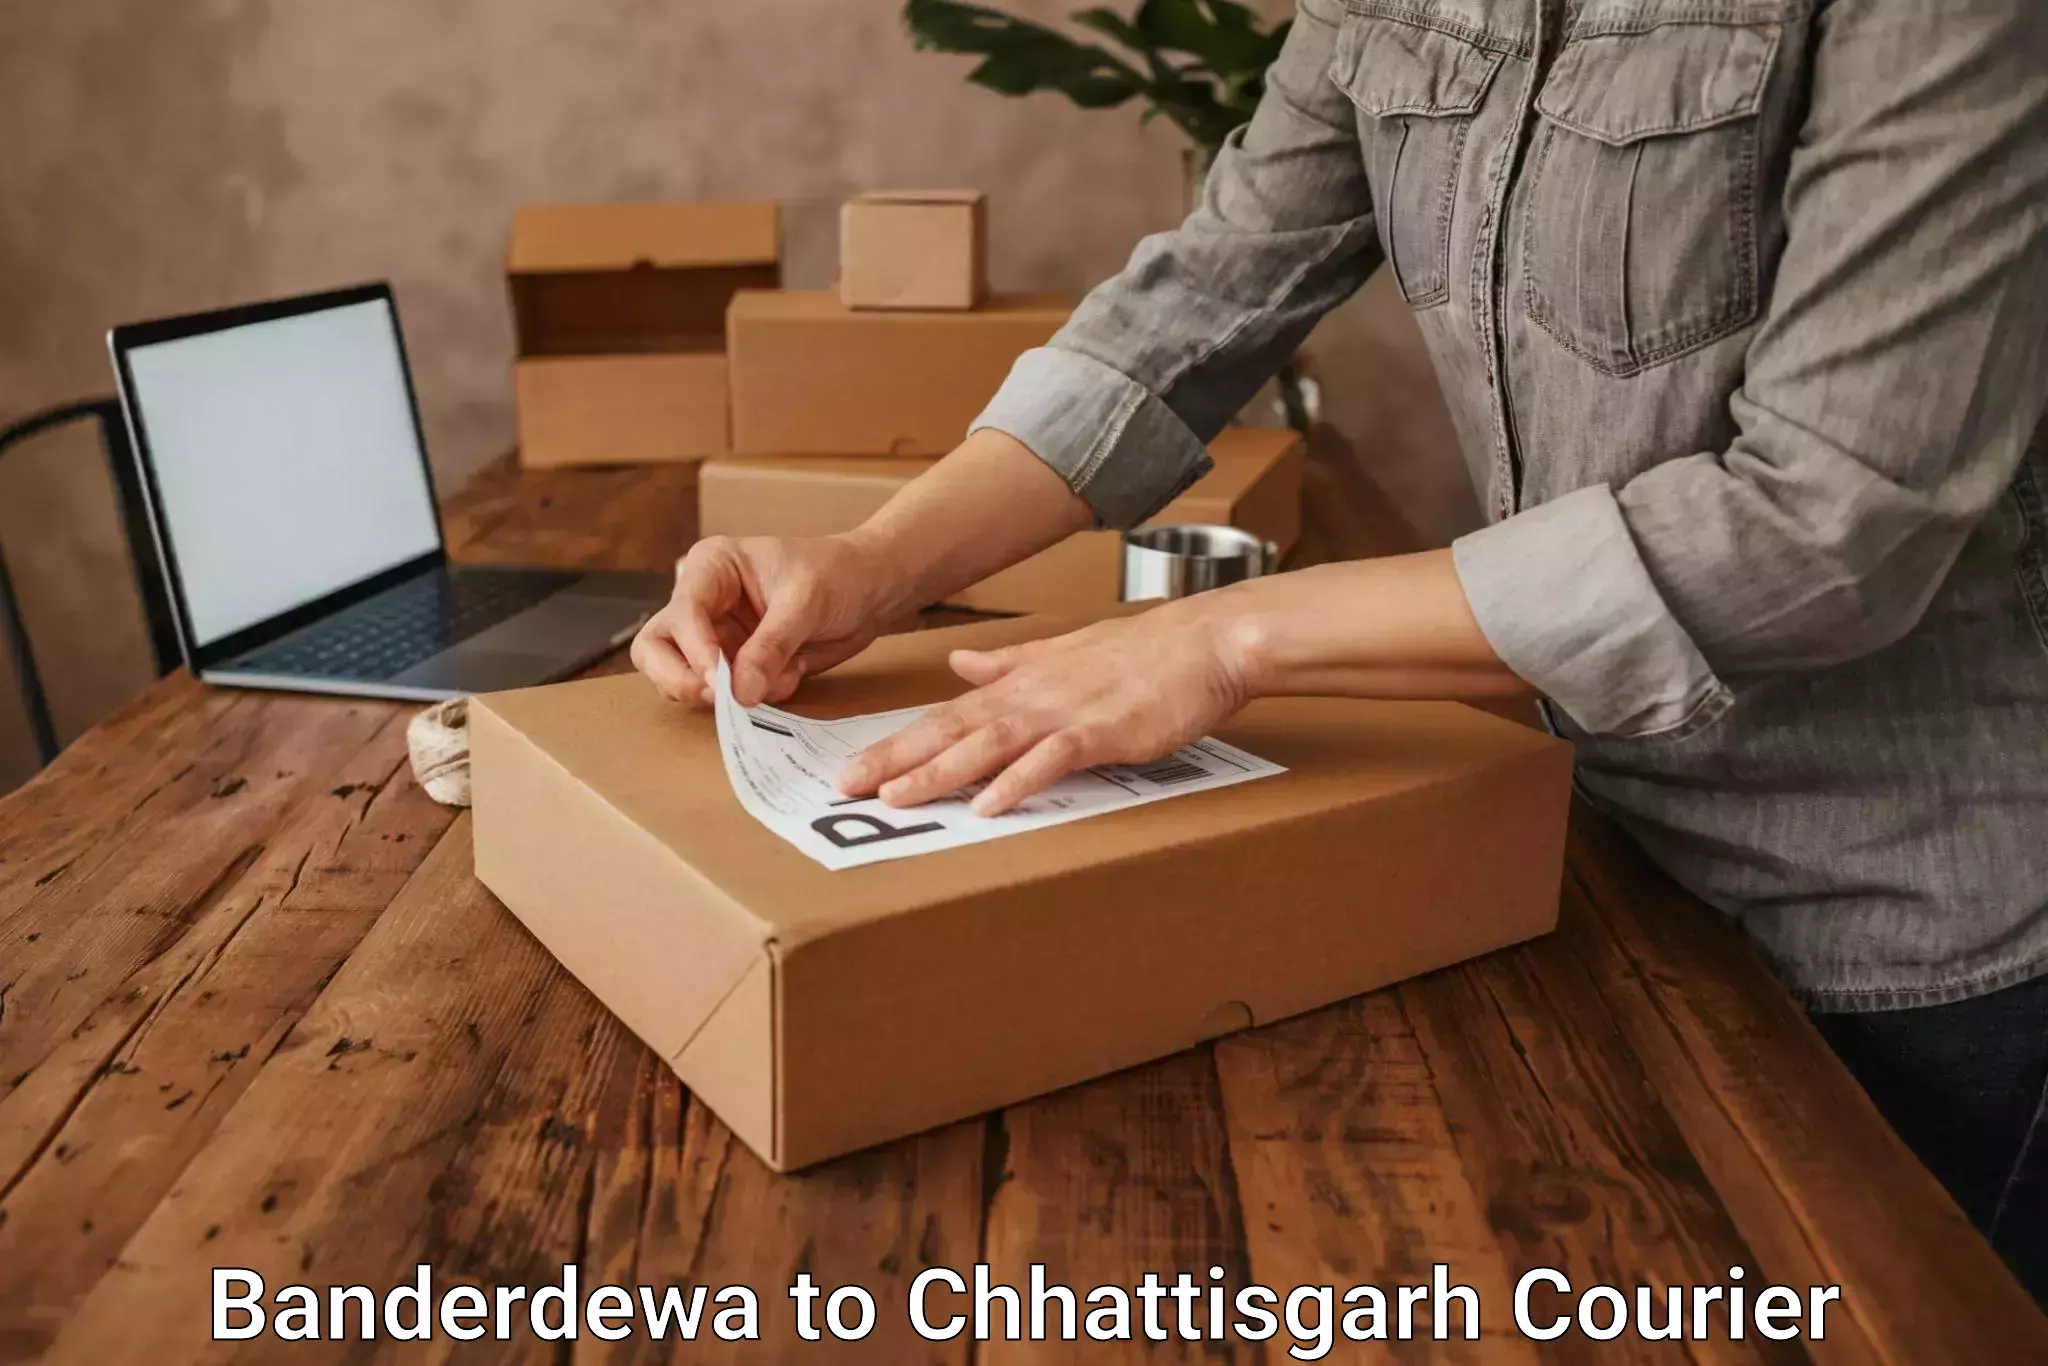 Optimized delivery routes Banderdewa to Bijapur Chhattisgarh